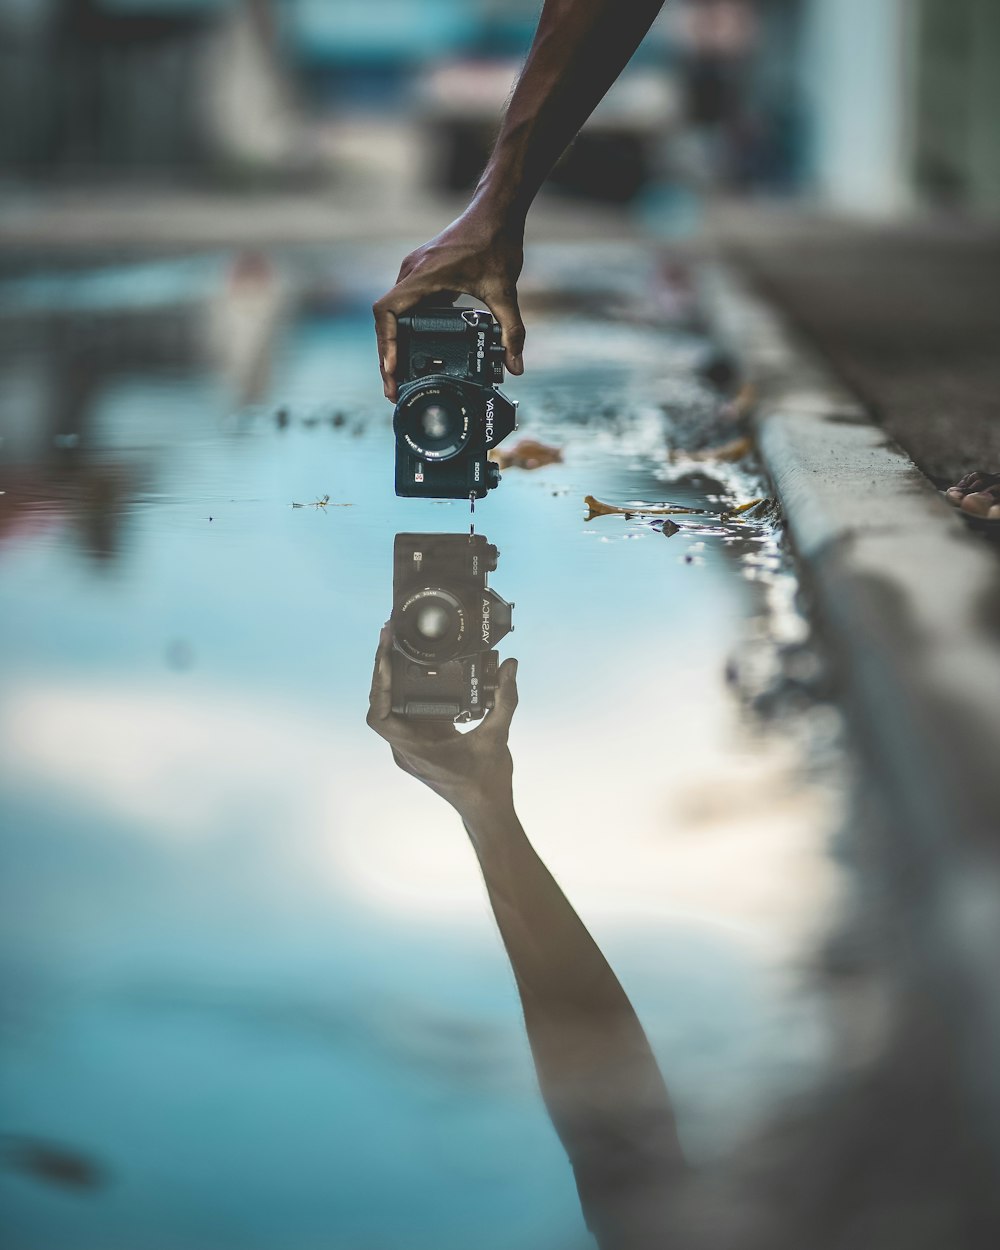 水面反射のあるデジタル一眼レフカメラを持っている人のミラー写真